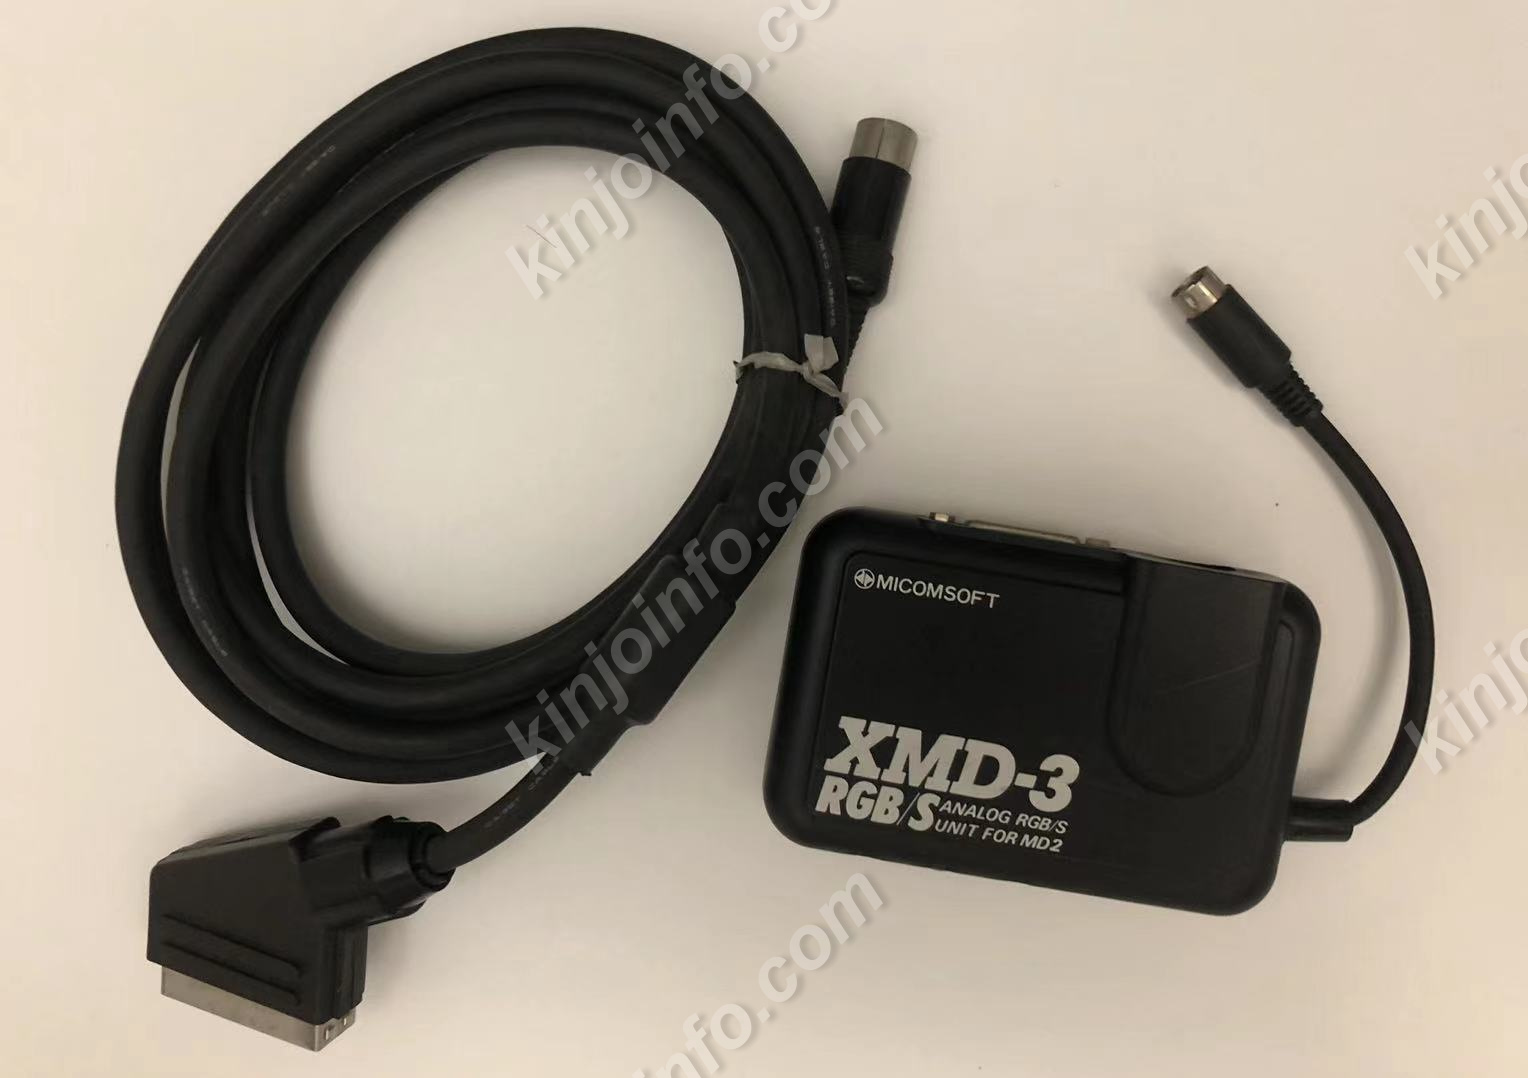 メガドライブ2用 アナログRGB/S端子 変換アダプター XMD-3 【中古 